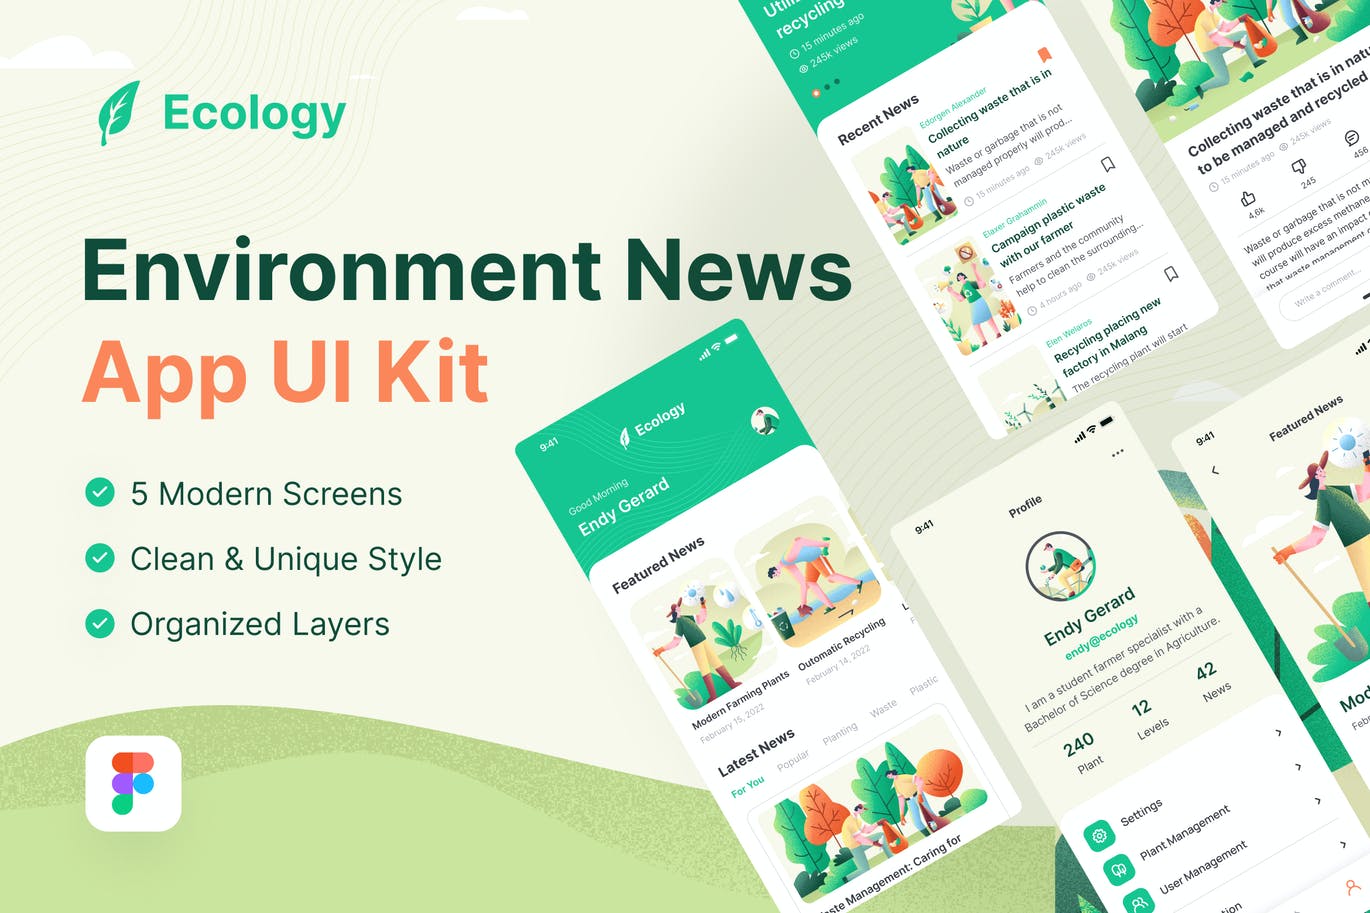 生态环境新闻移动 App UI Kit (FIG)